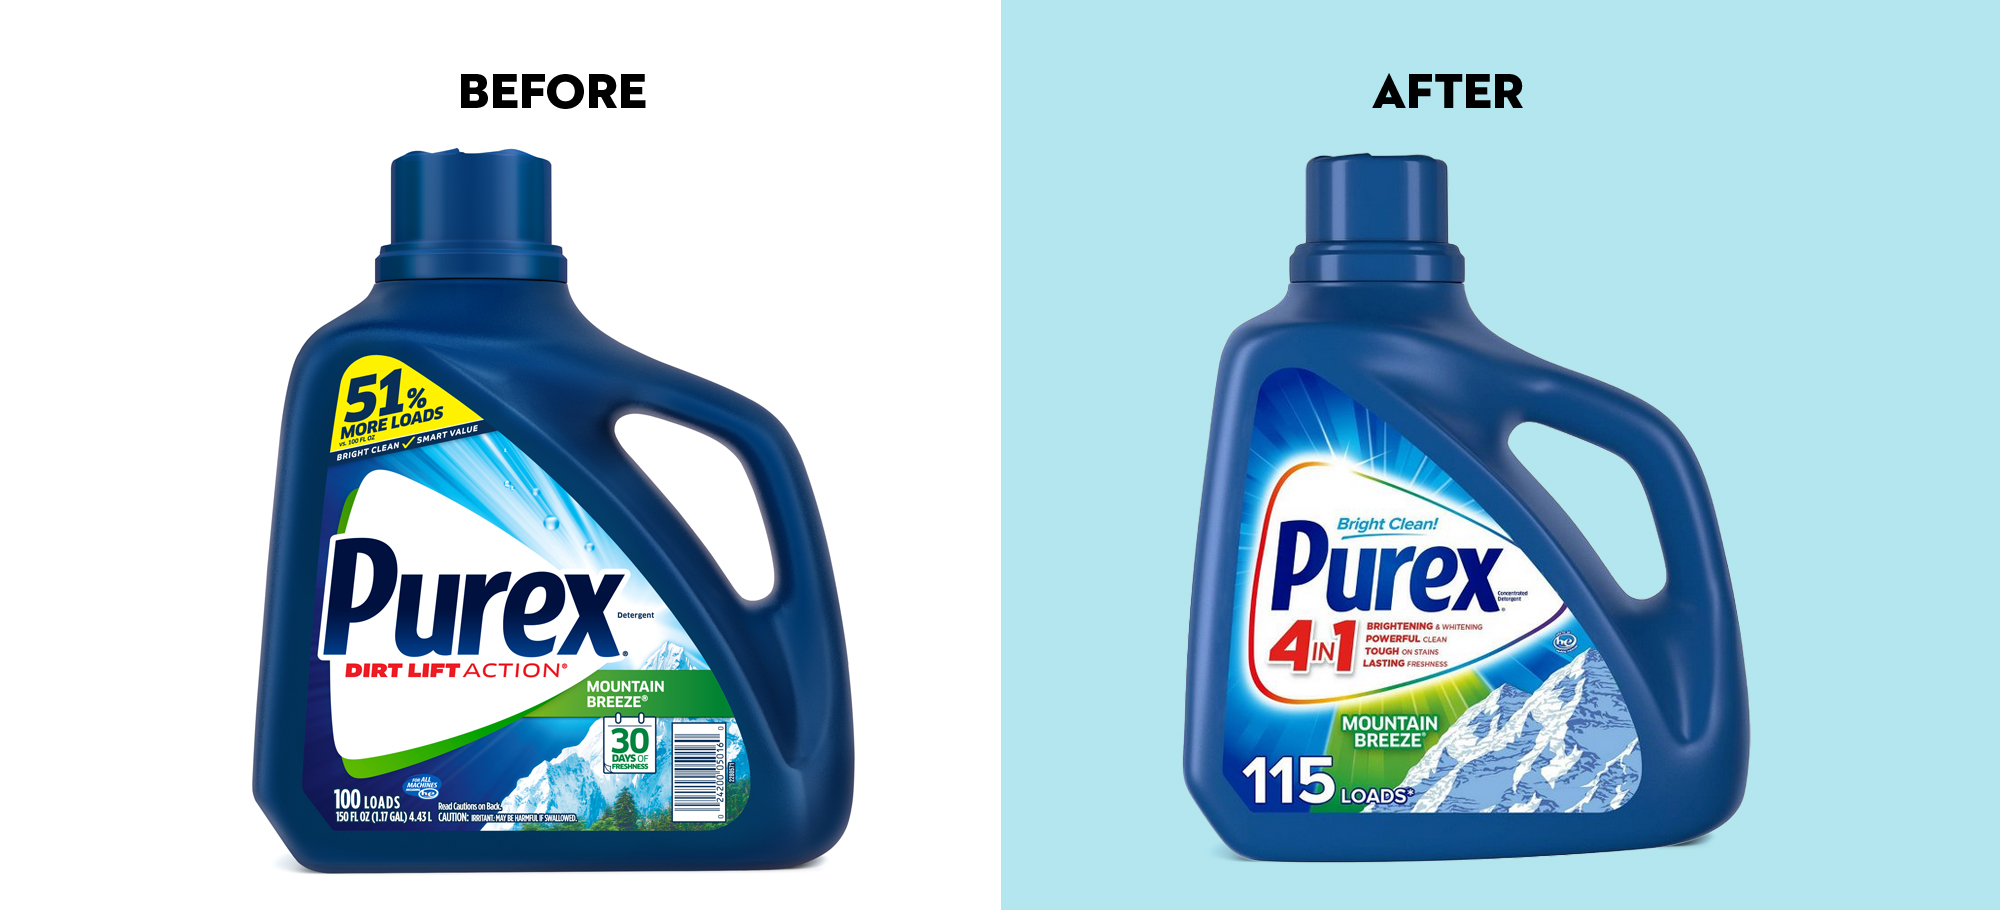 Purex Laundry Detergent packaging design